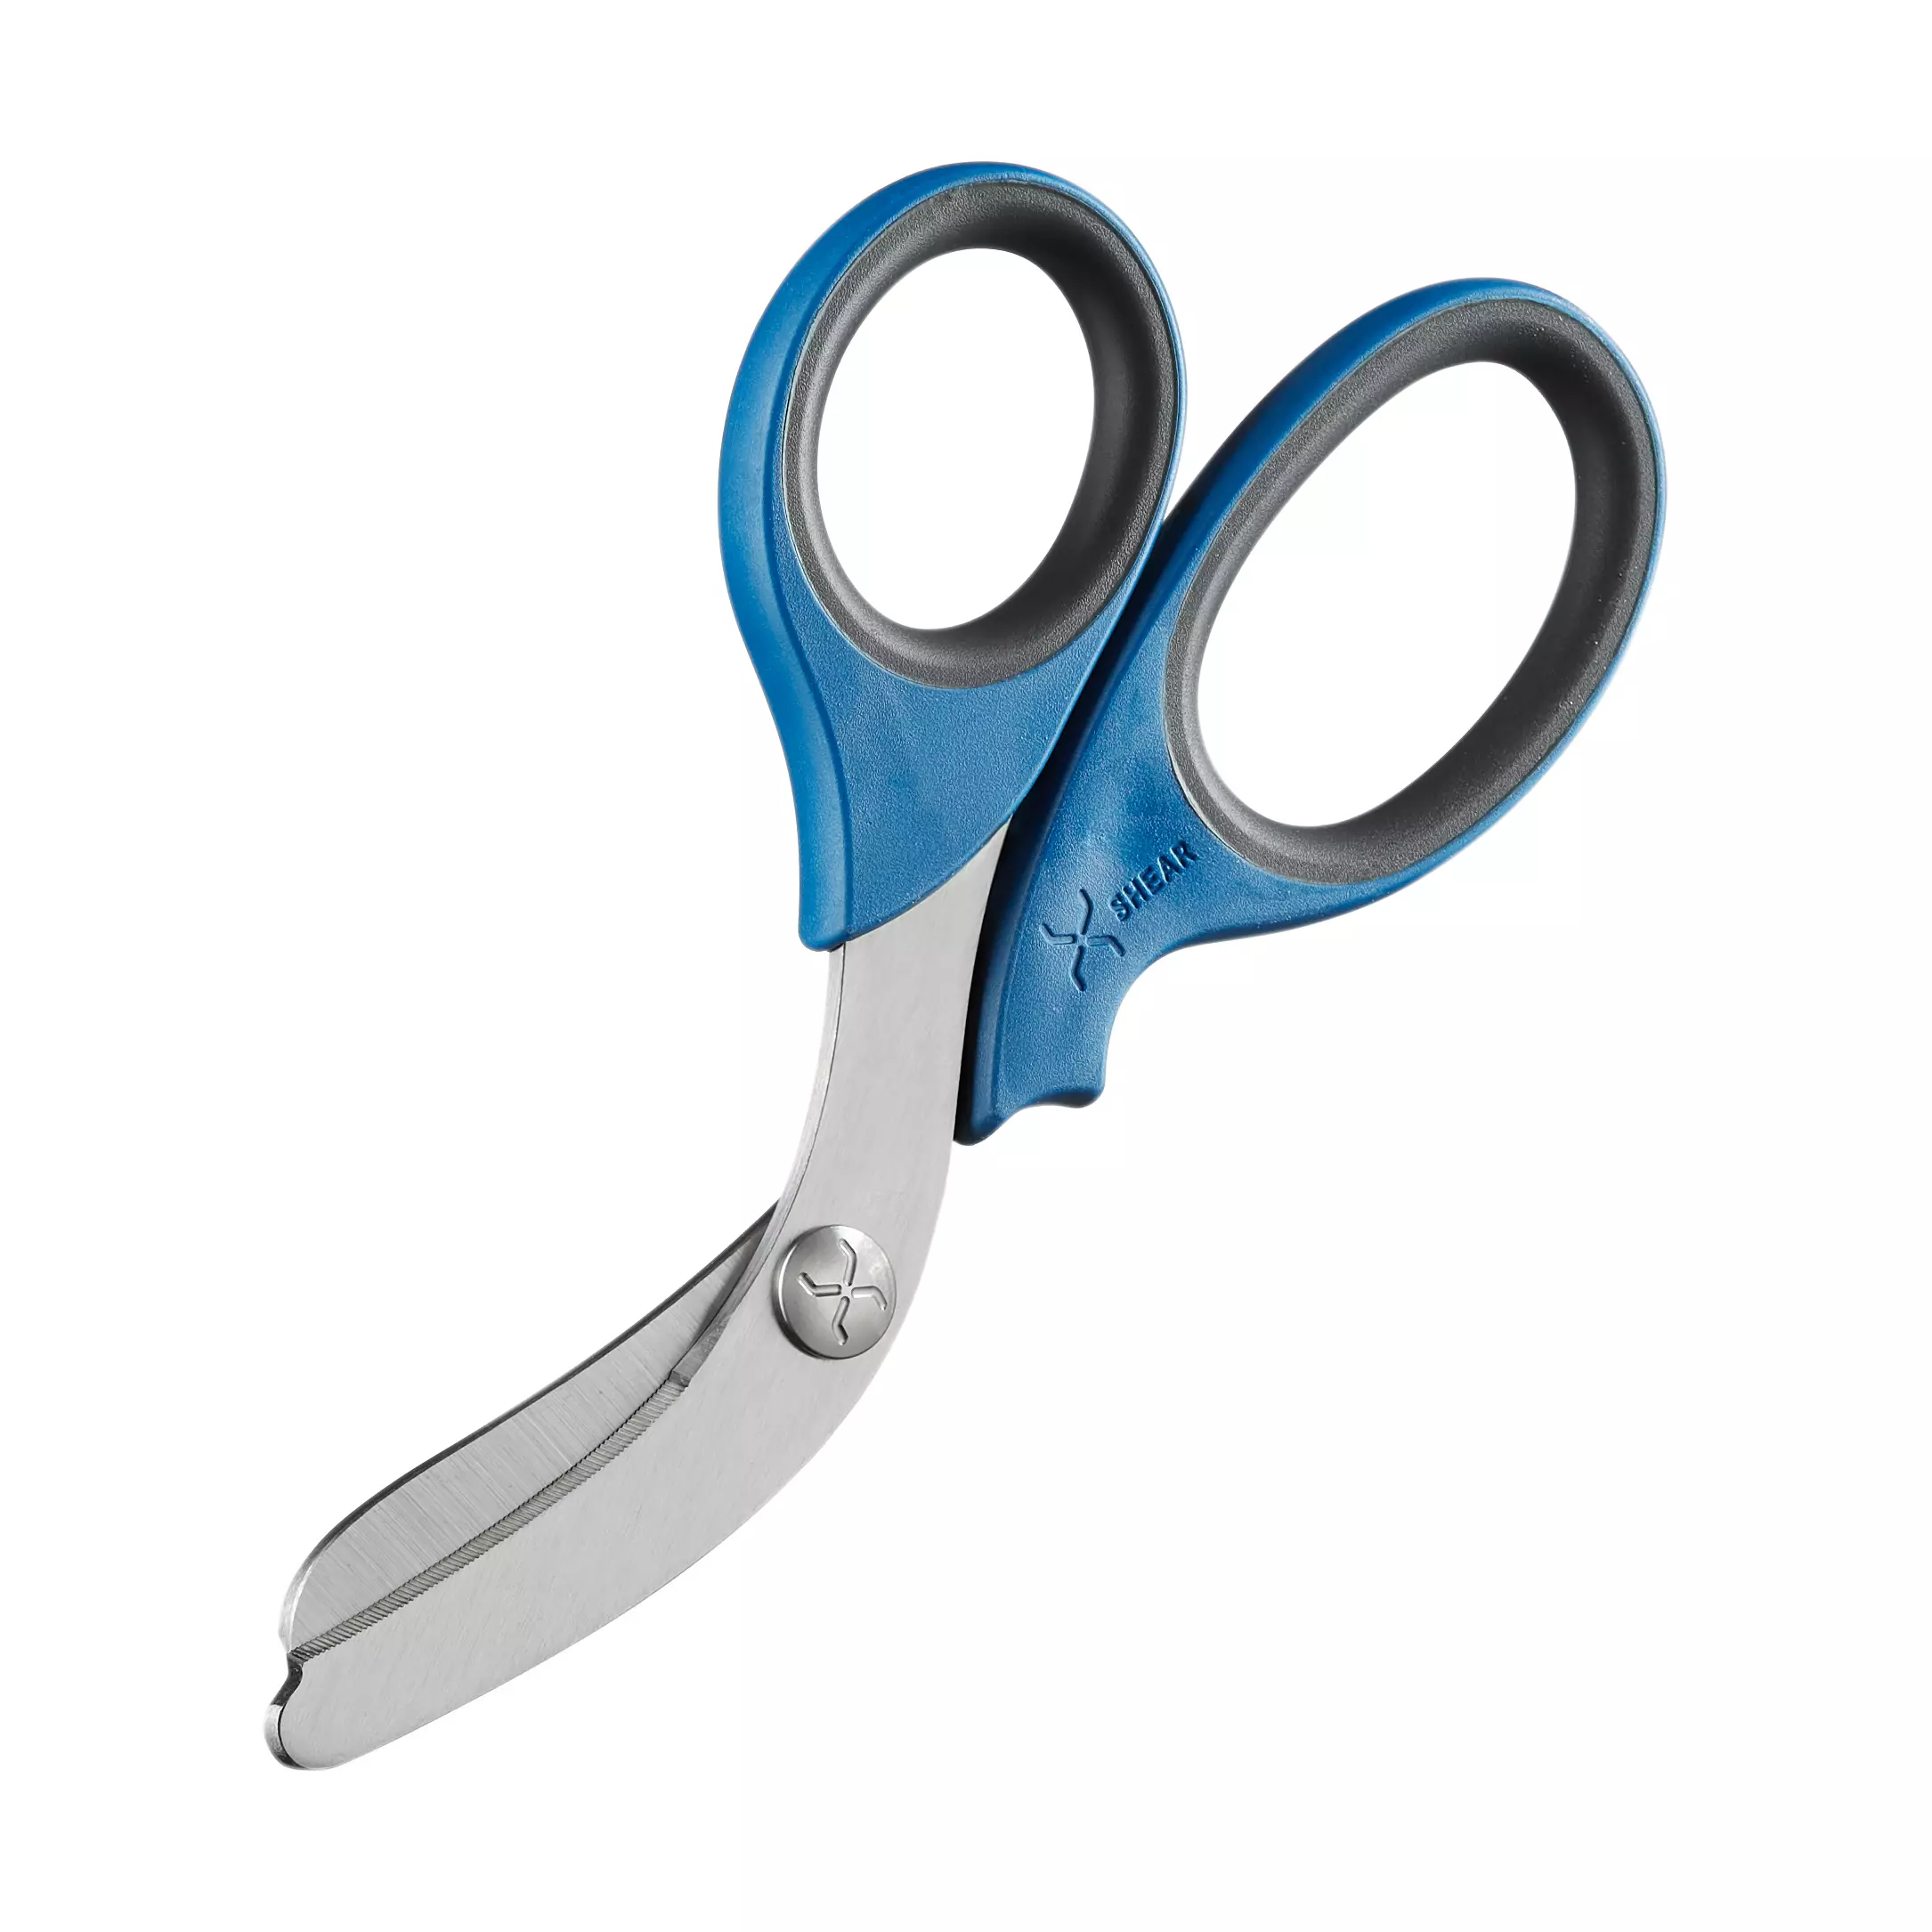 Trauma scissors XSHEAR® - Blue